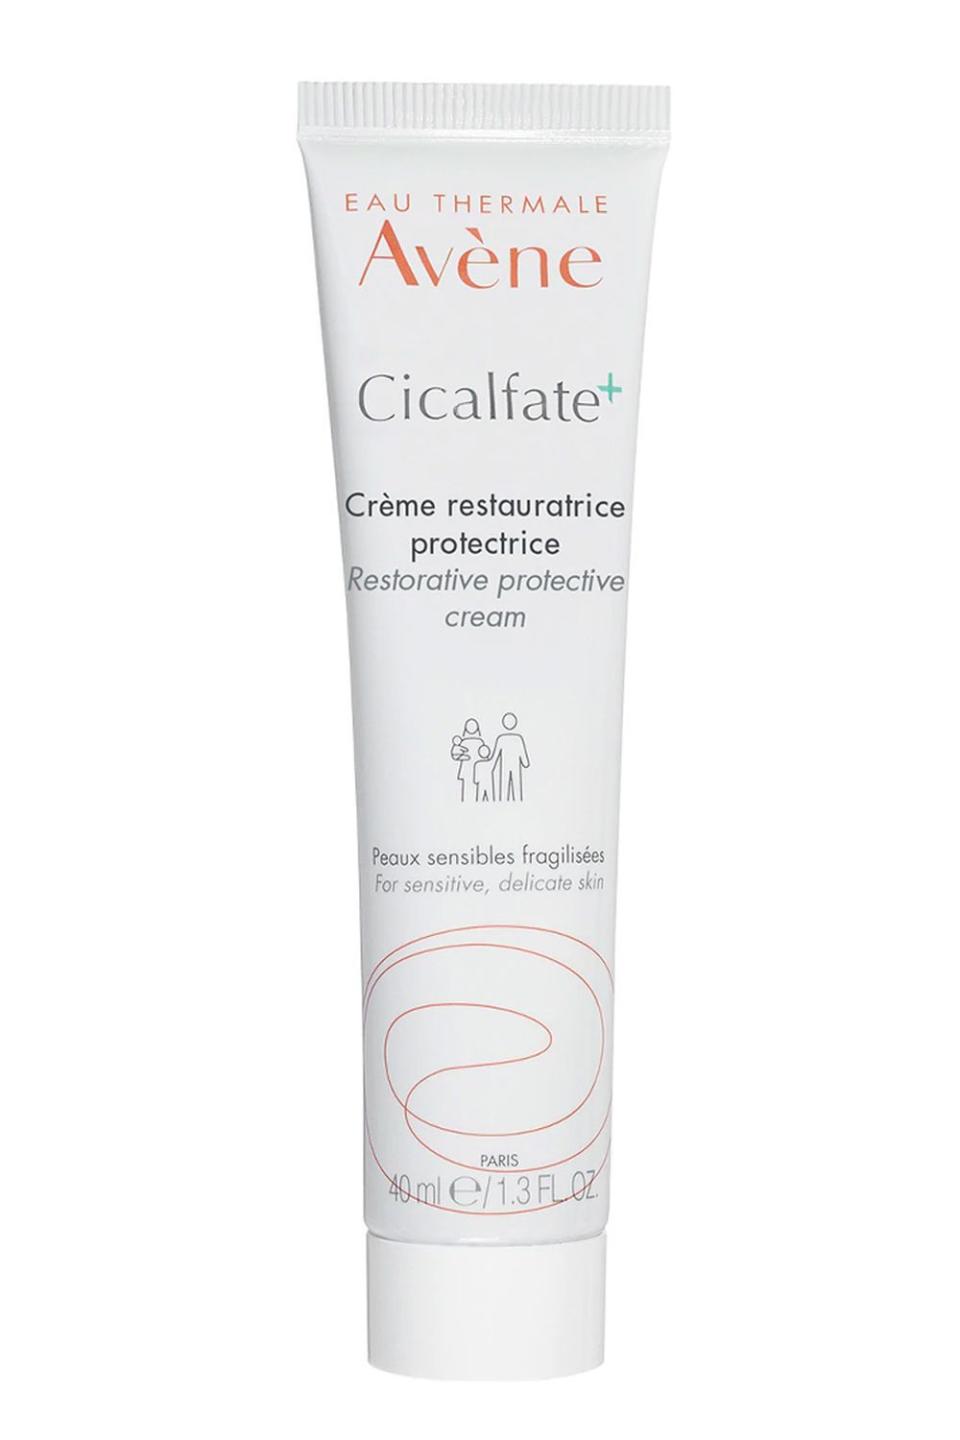 1) Avene Cicalfate+ Restorative Protective Cream